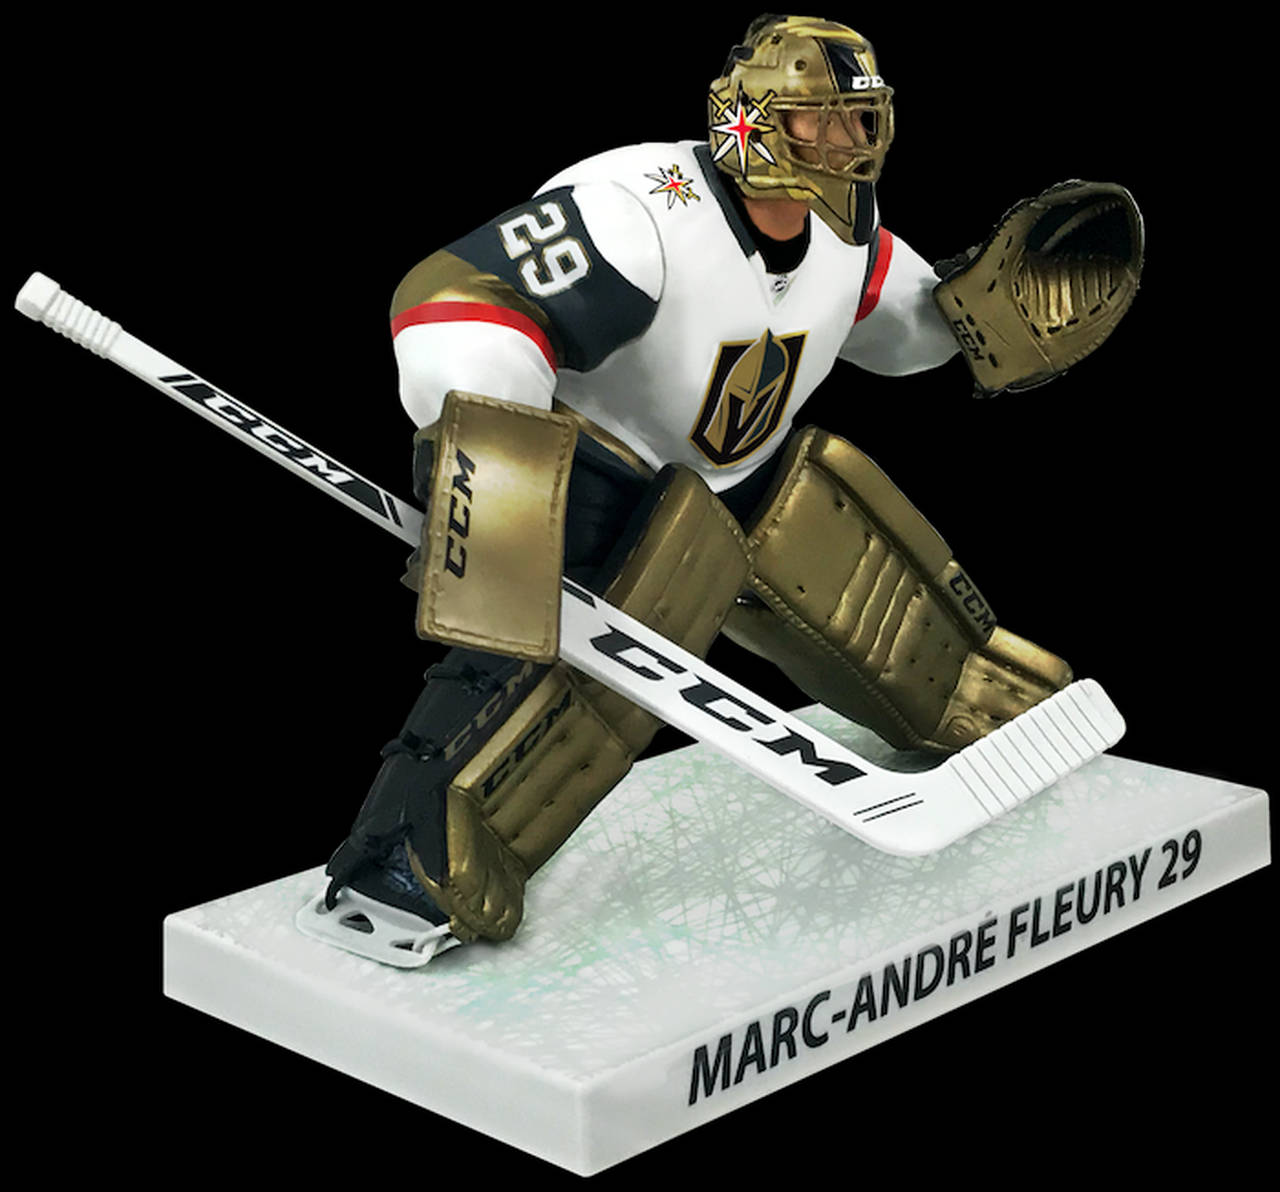 NHL målmand Marc-Andre Fleury er fremhævet i denne tegnefilmsinspirerede baggrund. Wallpaper